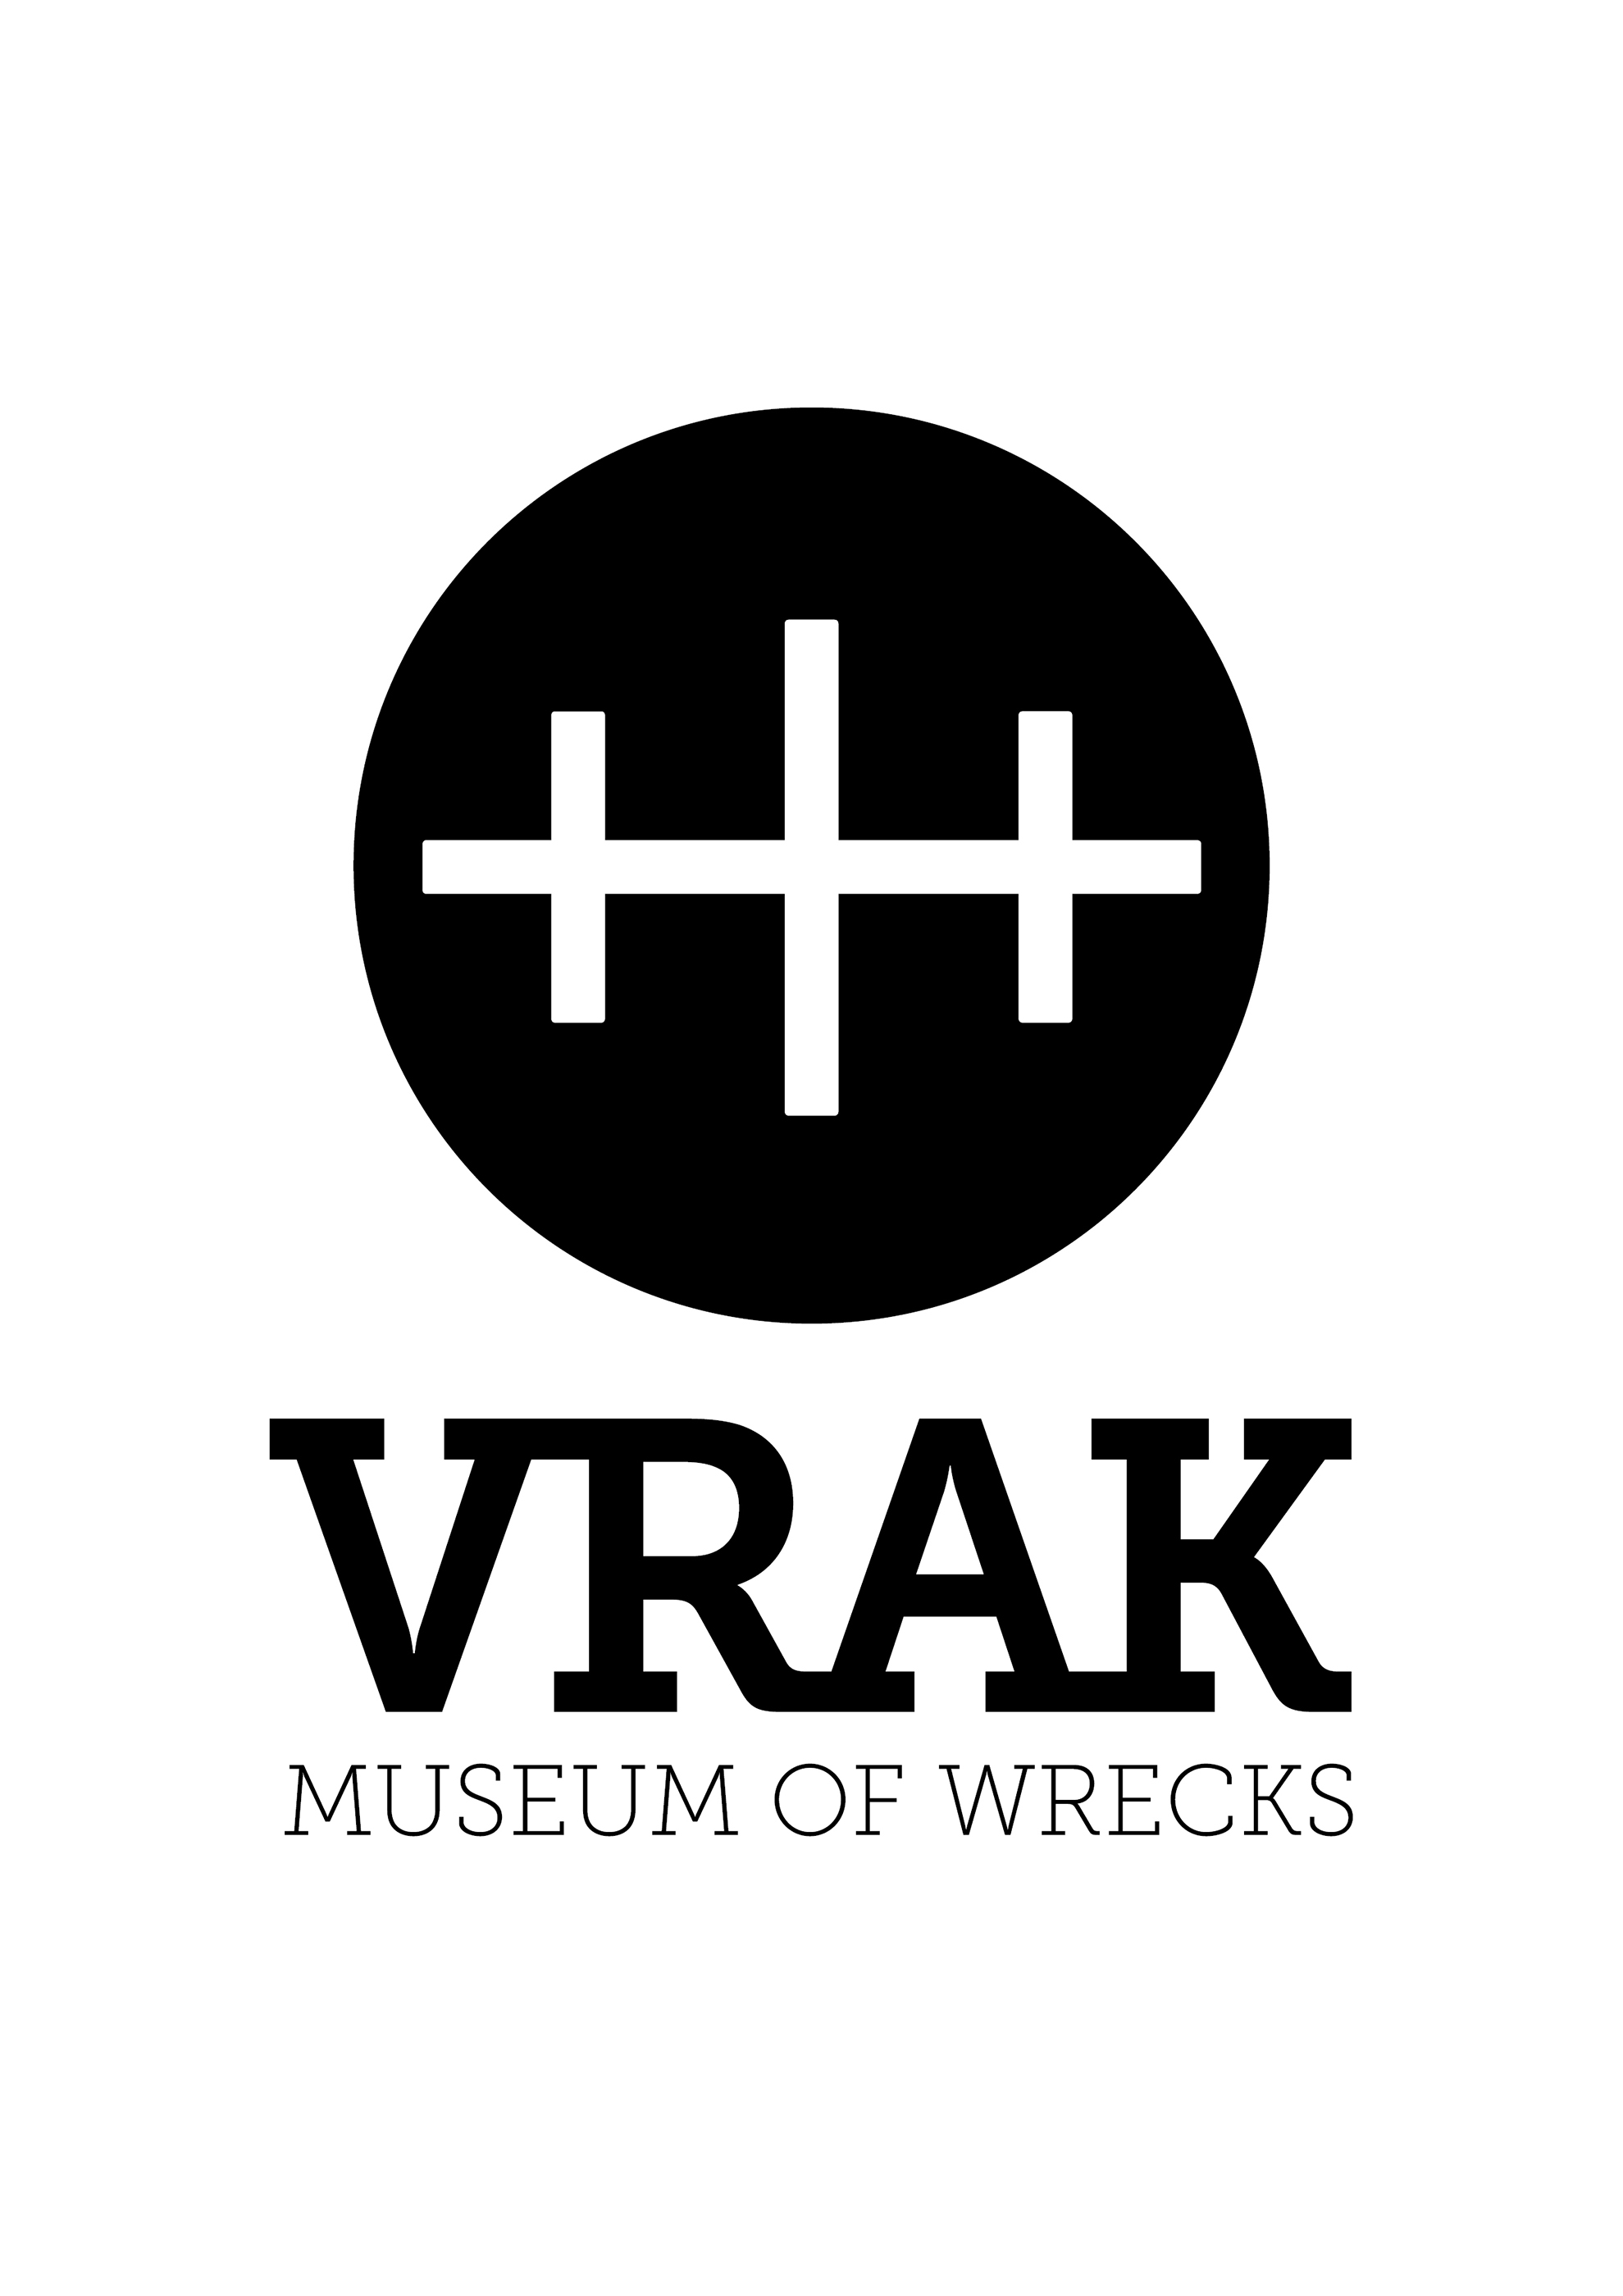 Vrak Museum of Wrecks